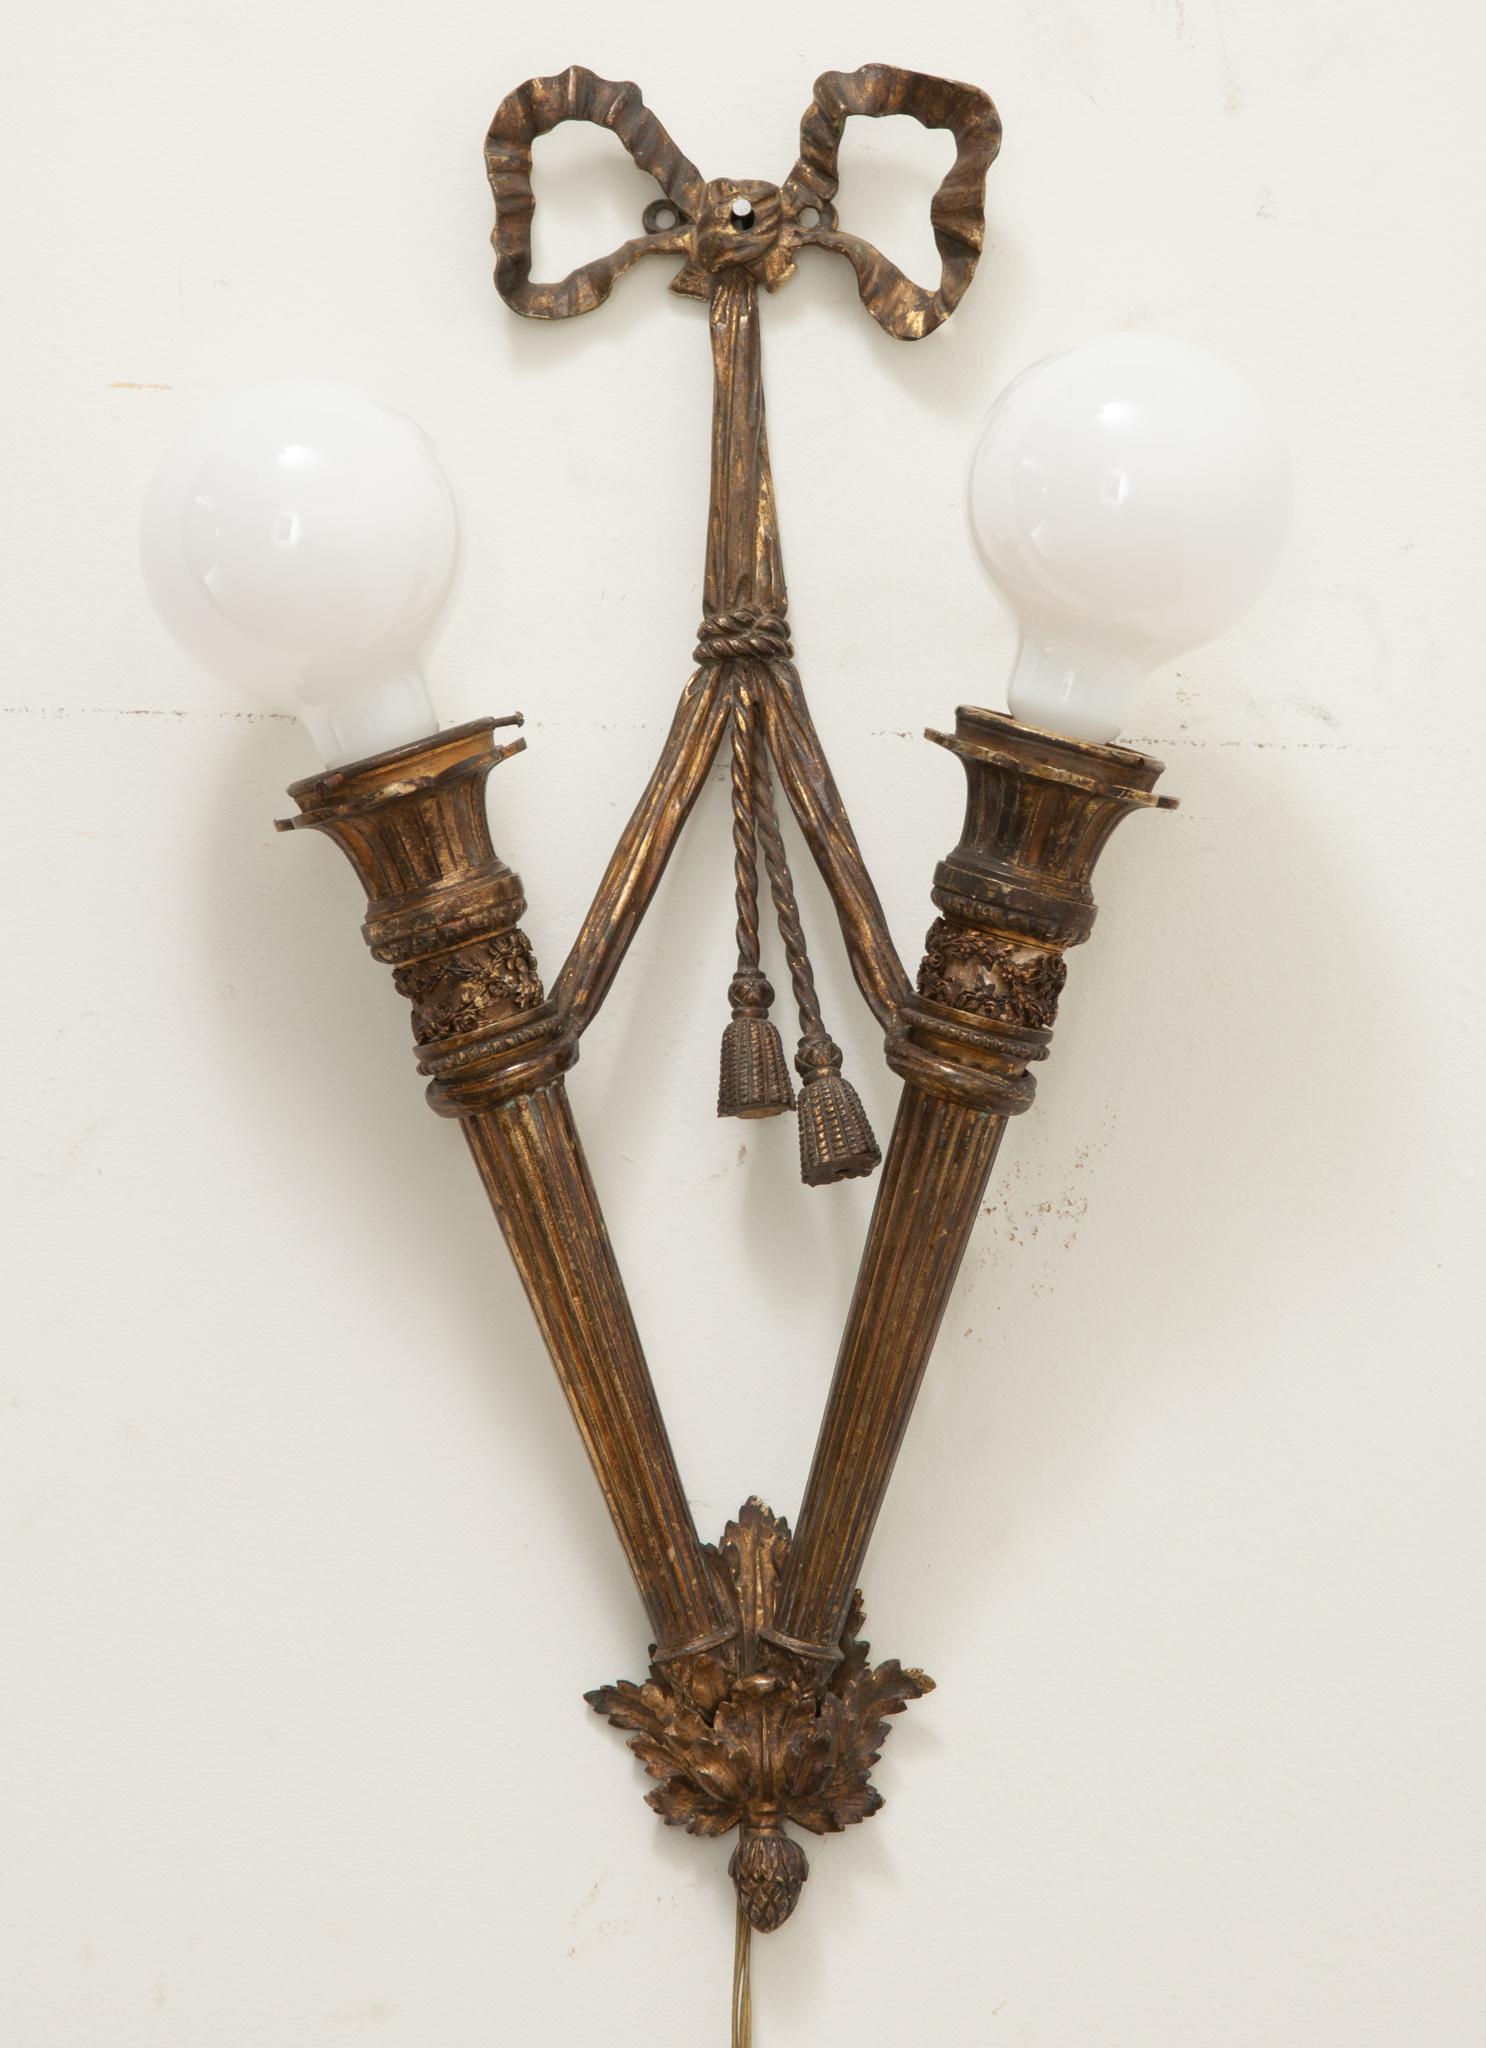 Ein französischer Wandleuchter im Louis-XVI-Stil mit zwei Glühbirnen. Diese klassisch gestaltete Bronzeleuchte zeigt einen Bogen, der sich um zwei kannelierte Säulenformen windet und mit einem Lorbeerblatt-Anhänger endet. Professionell neu